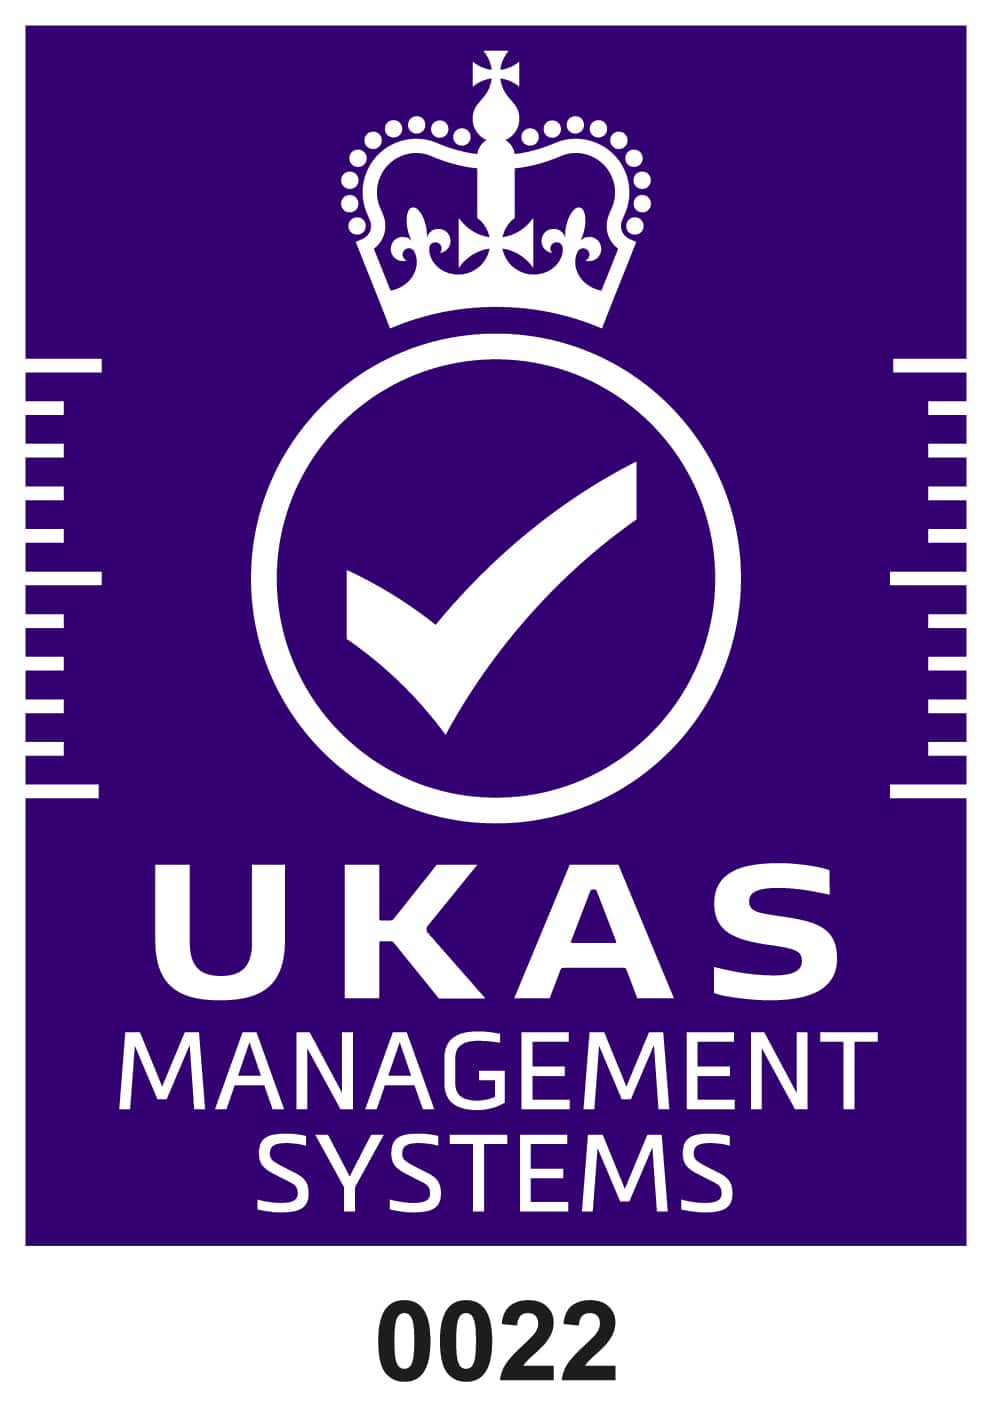 Símbolo de acreditación Ukas blanco sobre morado sistemas de gestión